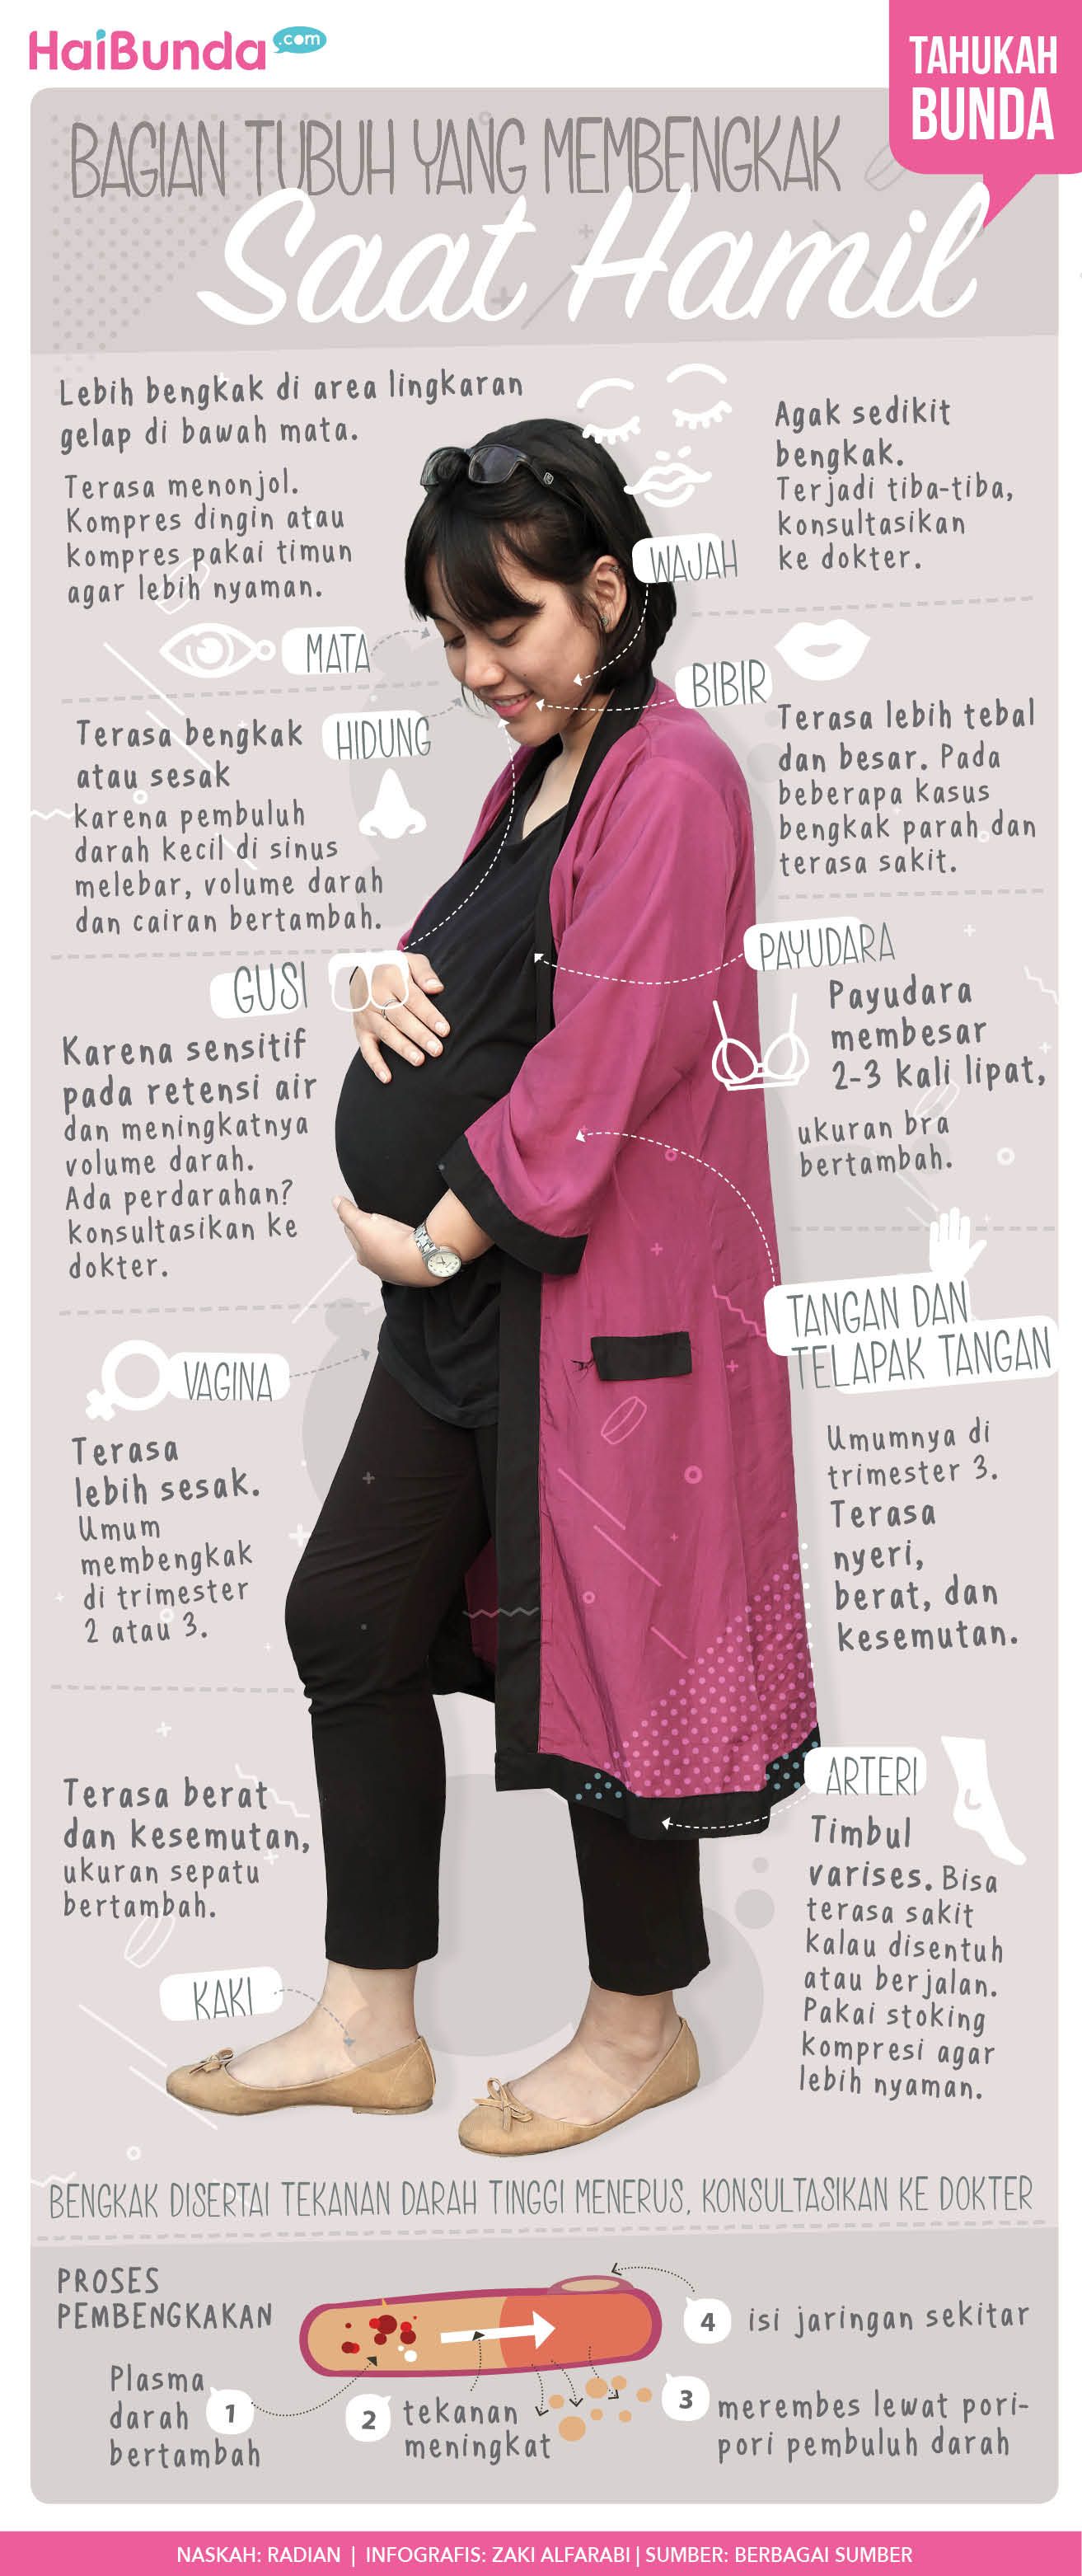 Infografis bagian tubuh bengkak saat hamil